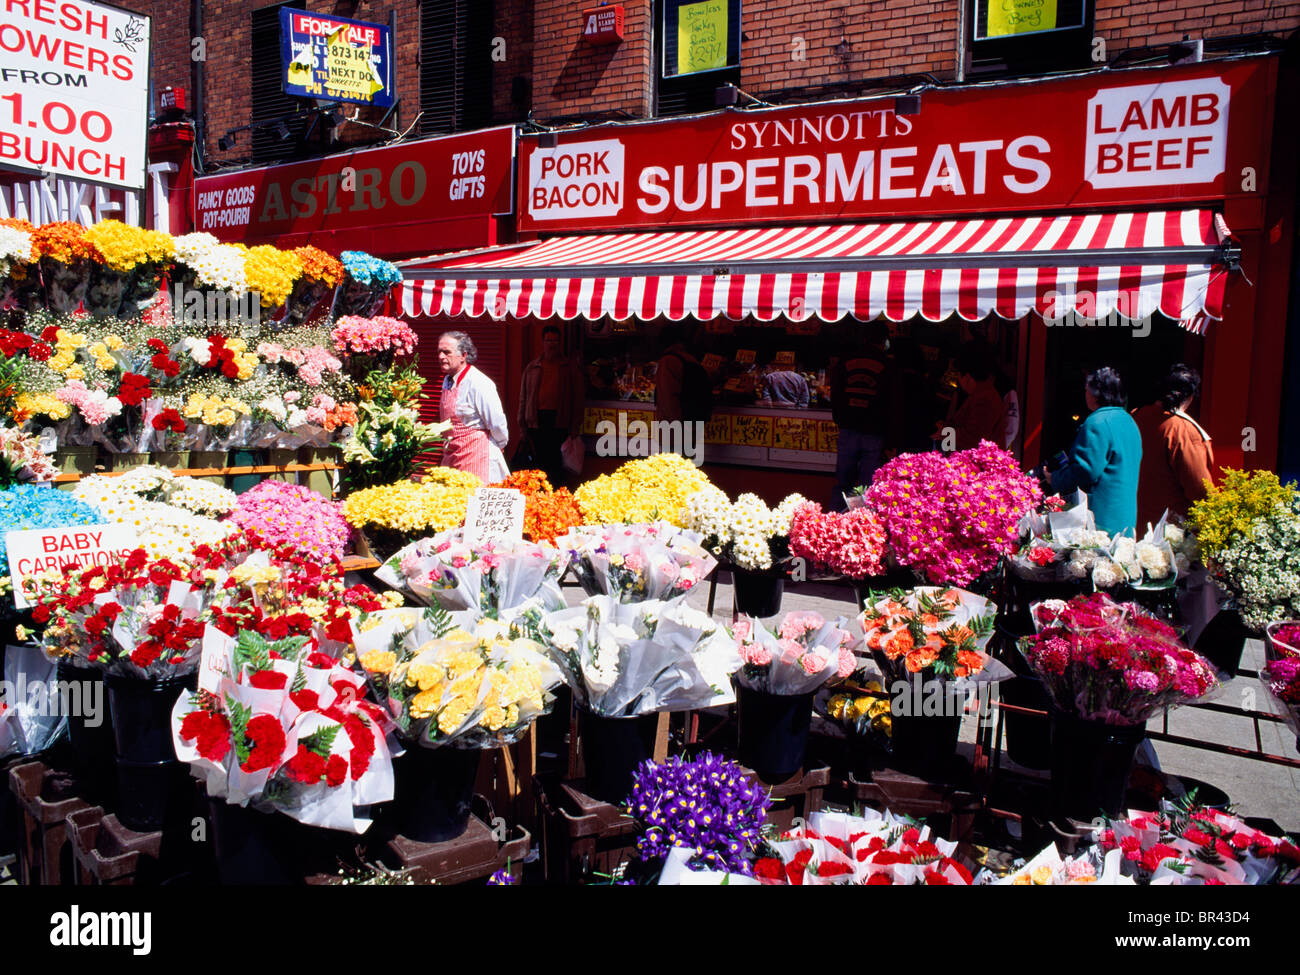 Dublin, Co Dublin, Ireland, Moore Street Markets Stock Photo